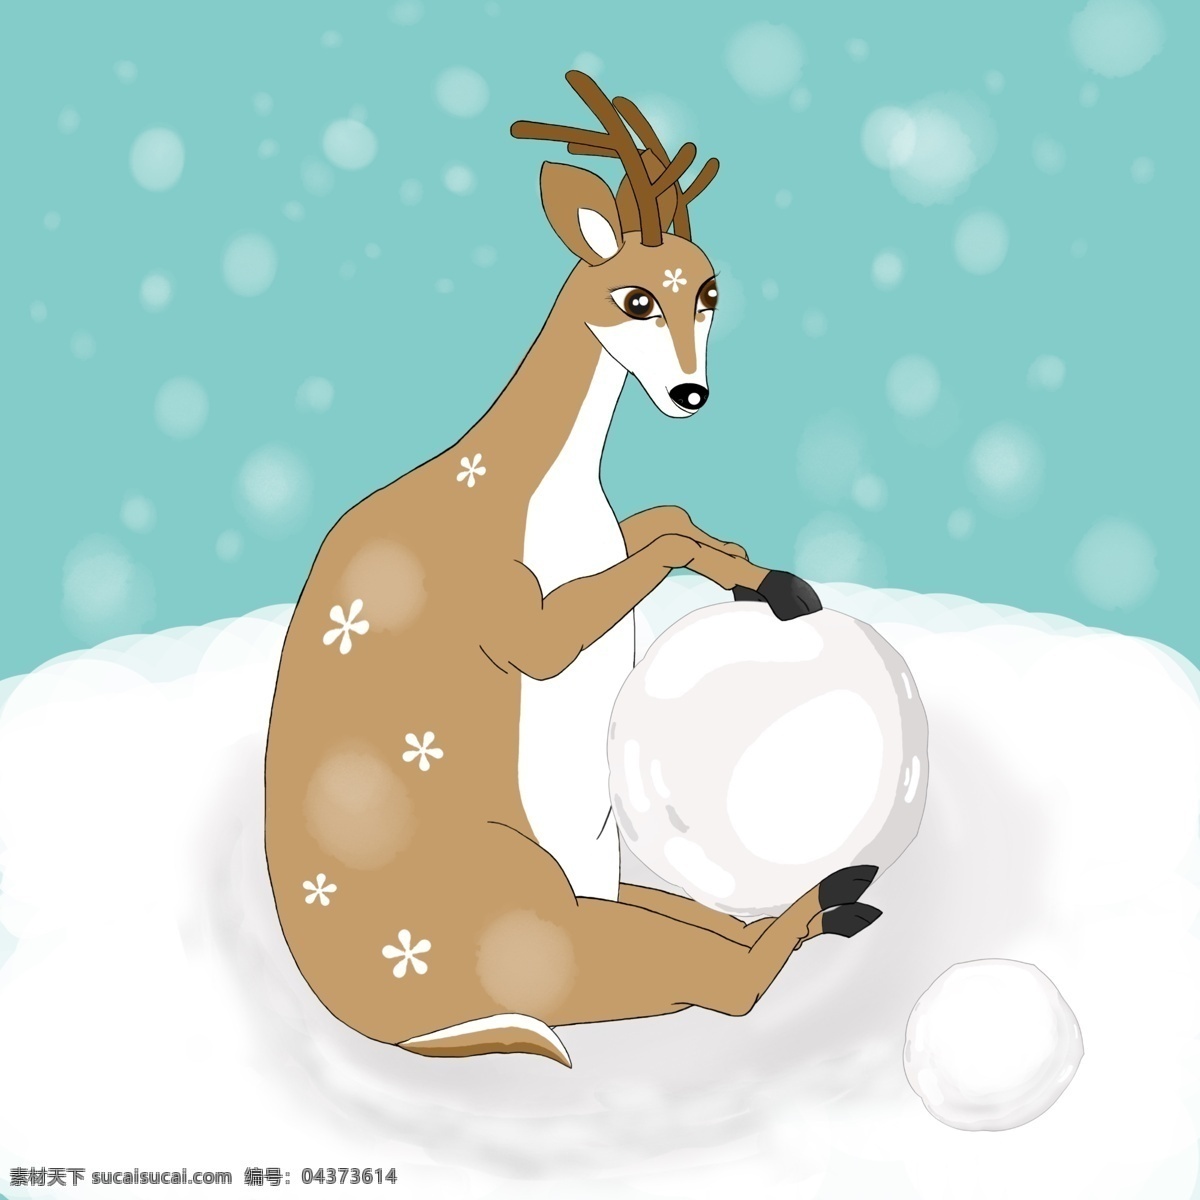 小鹿 胖胖 鹿 滚雪球 雪球 小花 鹿角 雪花 尾巴 雪